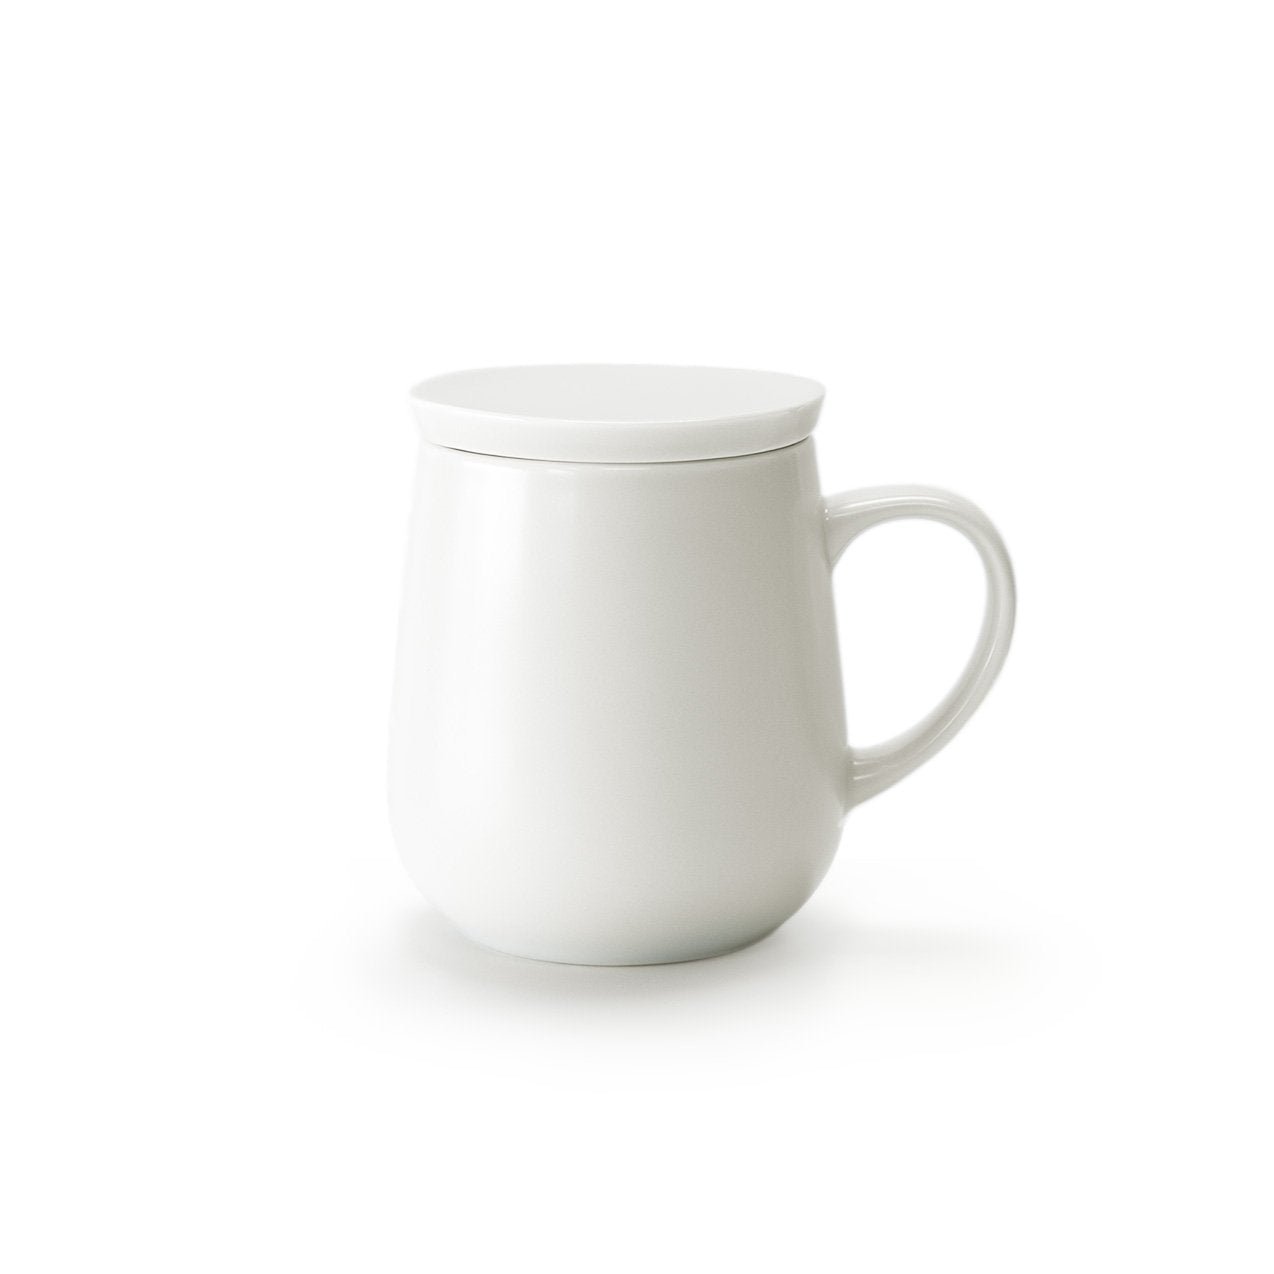 Small white mug with lid